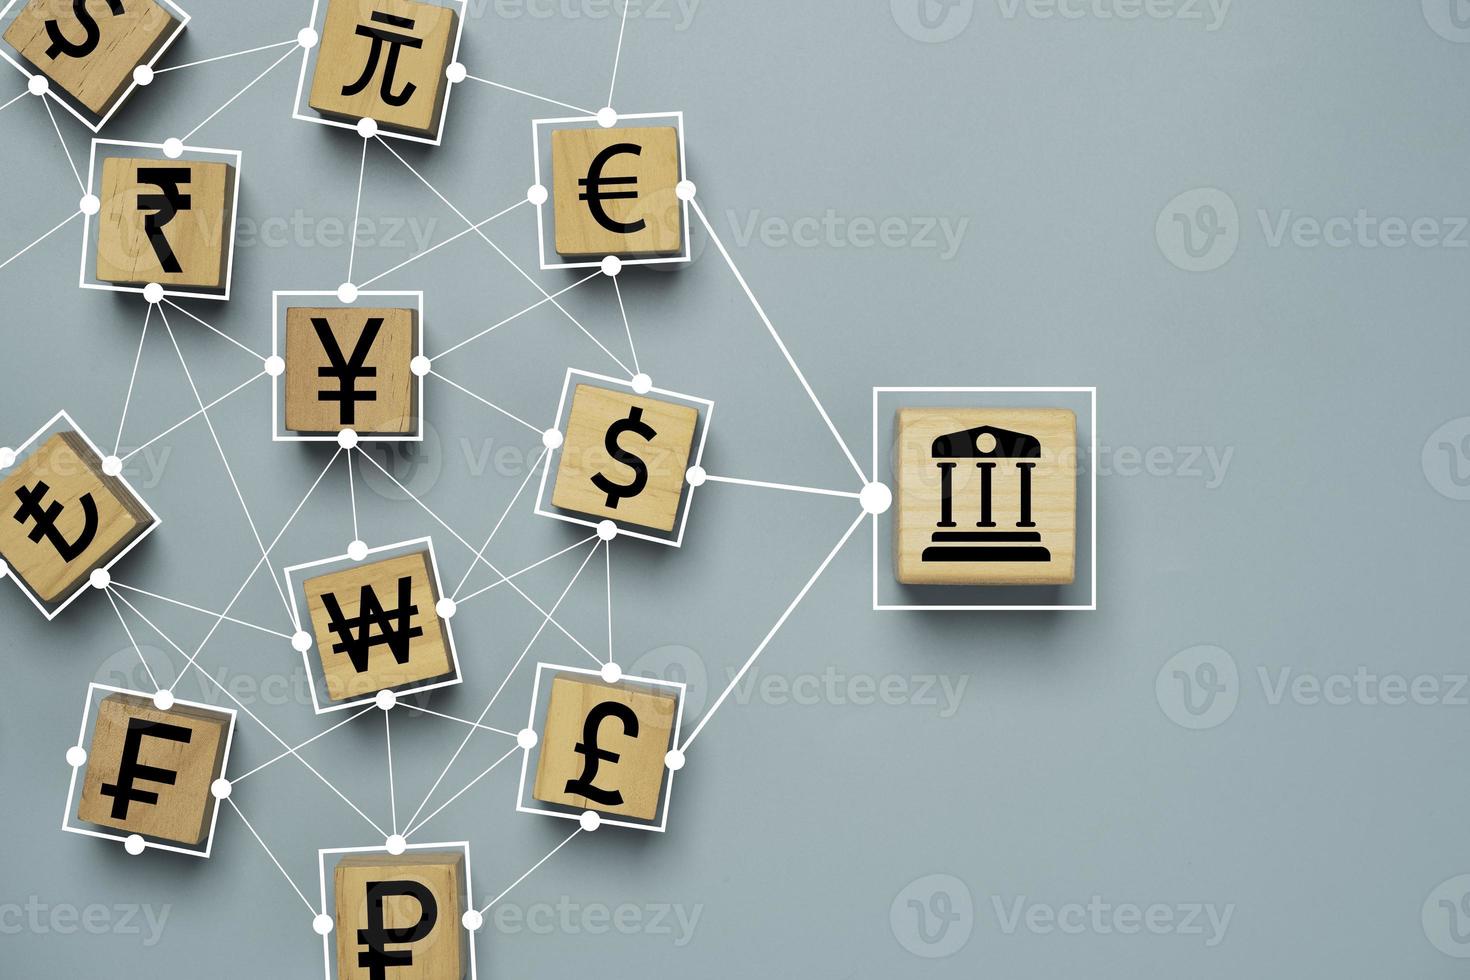 el icono de la banca central conecta el vínculo con el signo de la moneda, que incluye el dólar estadounidense, el euro, el yen, el yuan y la libra esterlina para el cambio y la transferencia de dinero global o el concepto de divisas. foto